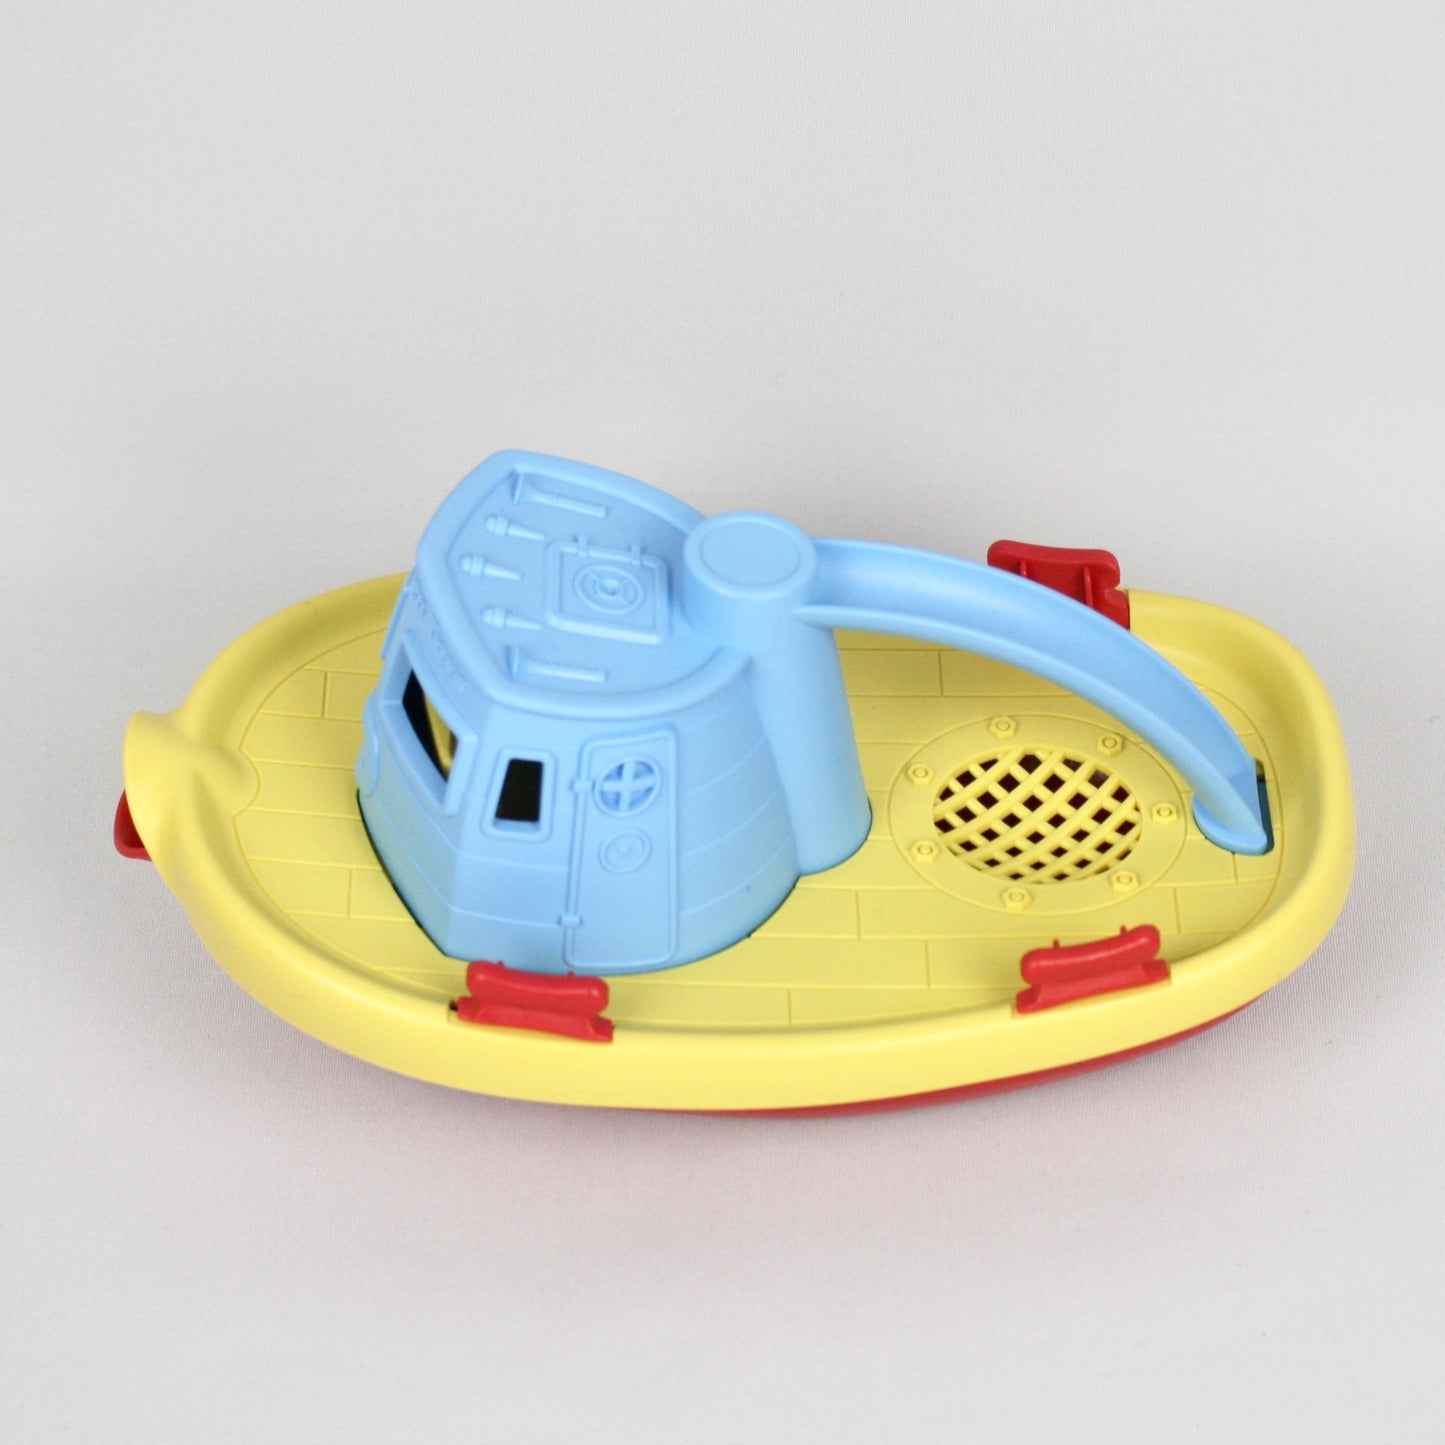 Tugboat Bath Toy